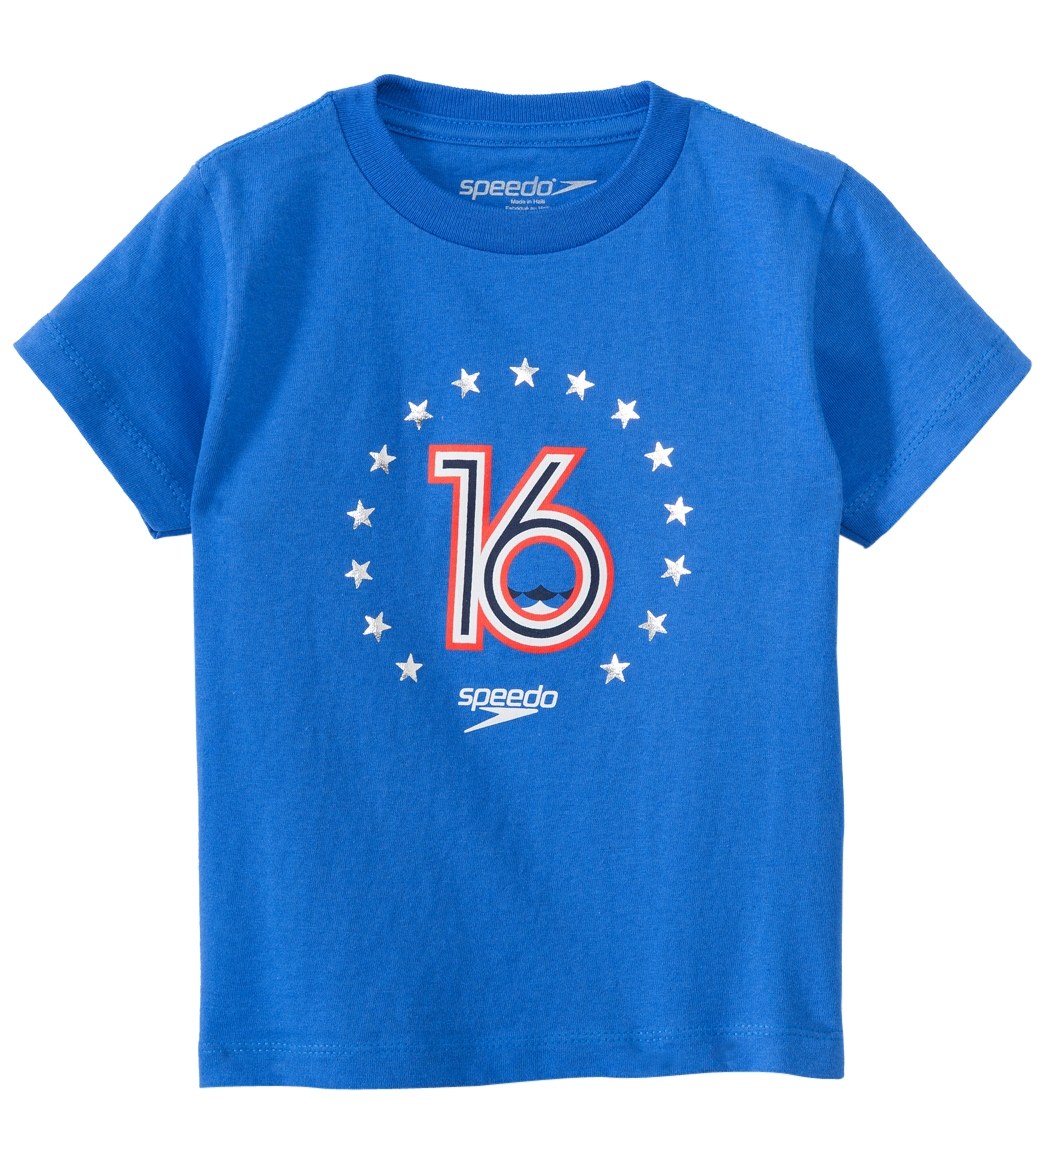 Speedo Men's Toddler 16 Tee Shirt - Blue 2T Cotton - Swimoutlet.com